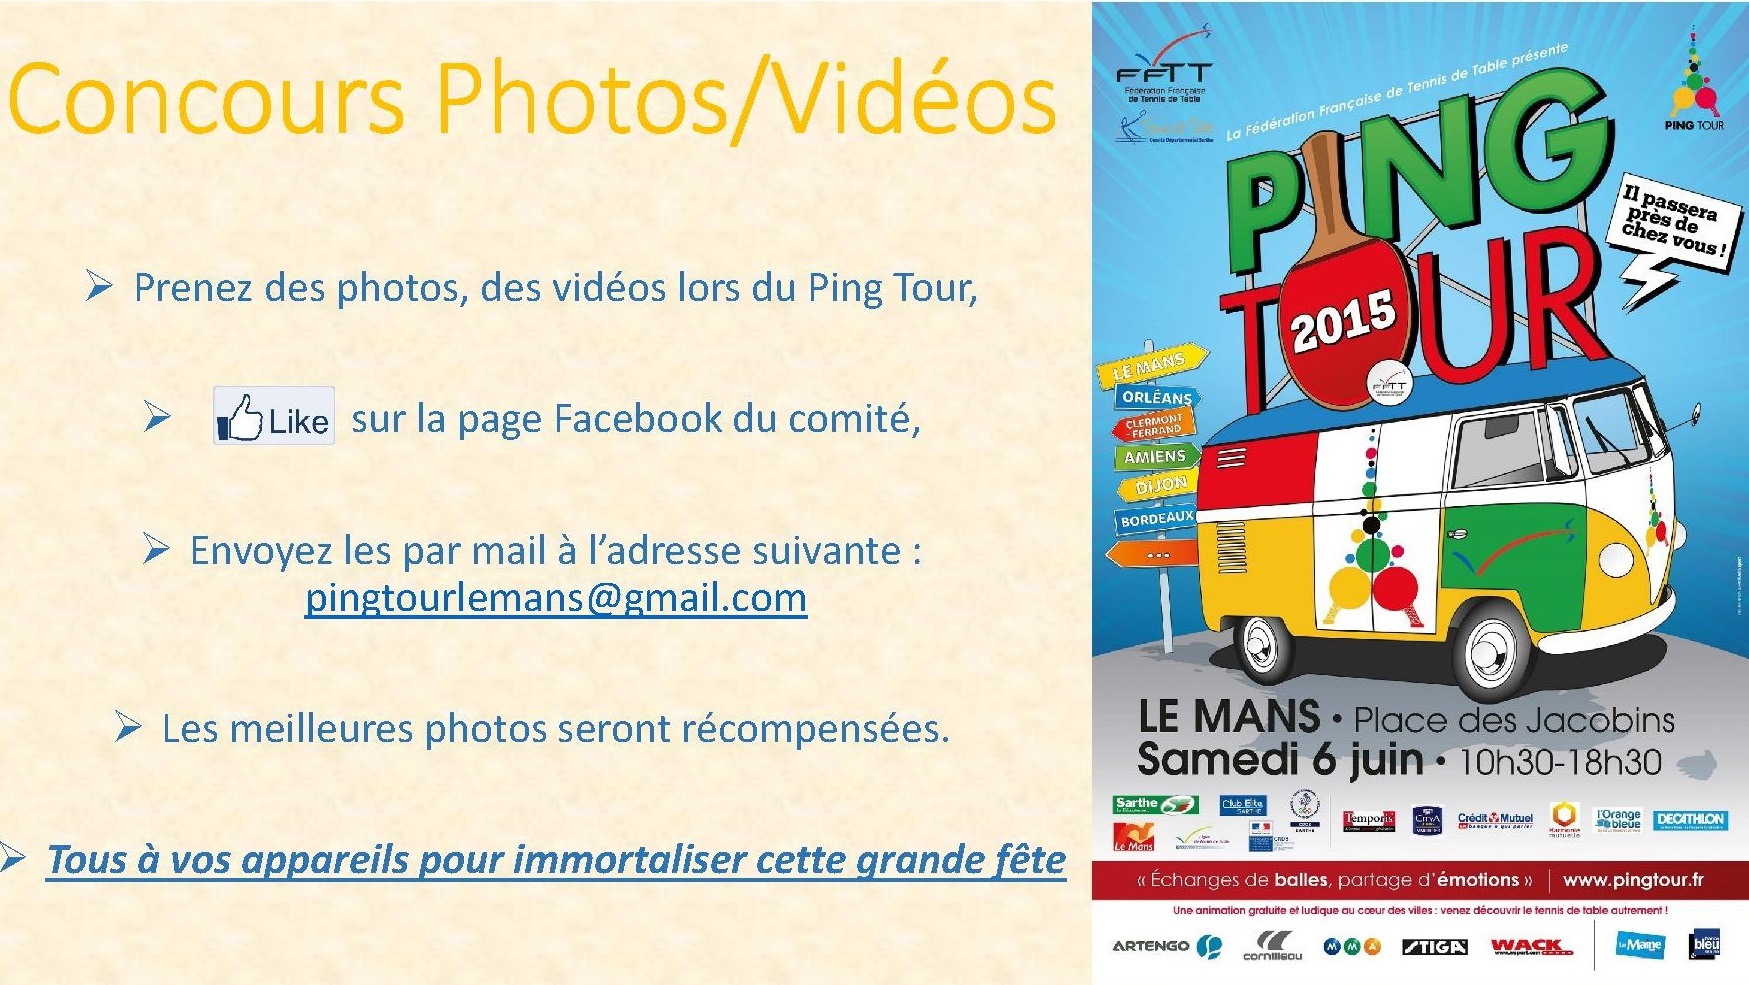 Ping Tour : Concours Photo/Vidéo